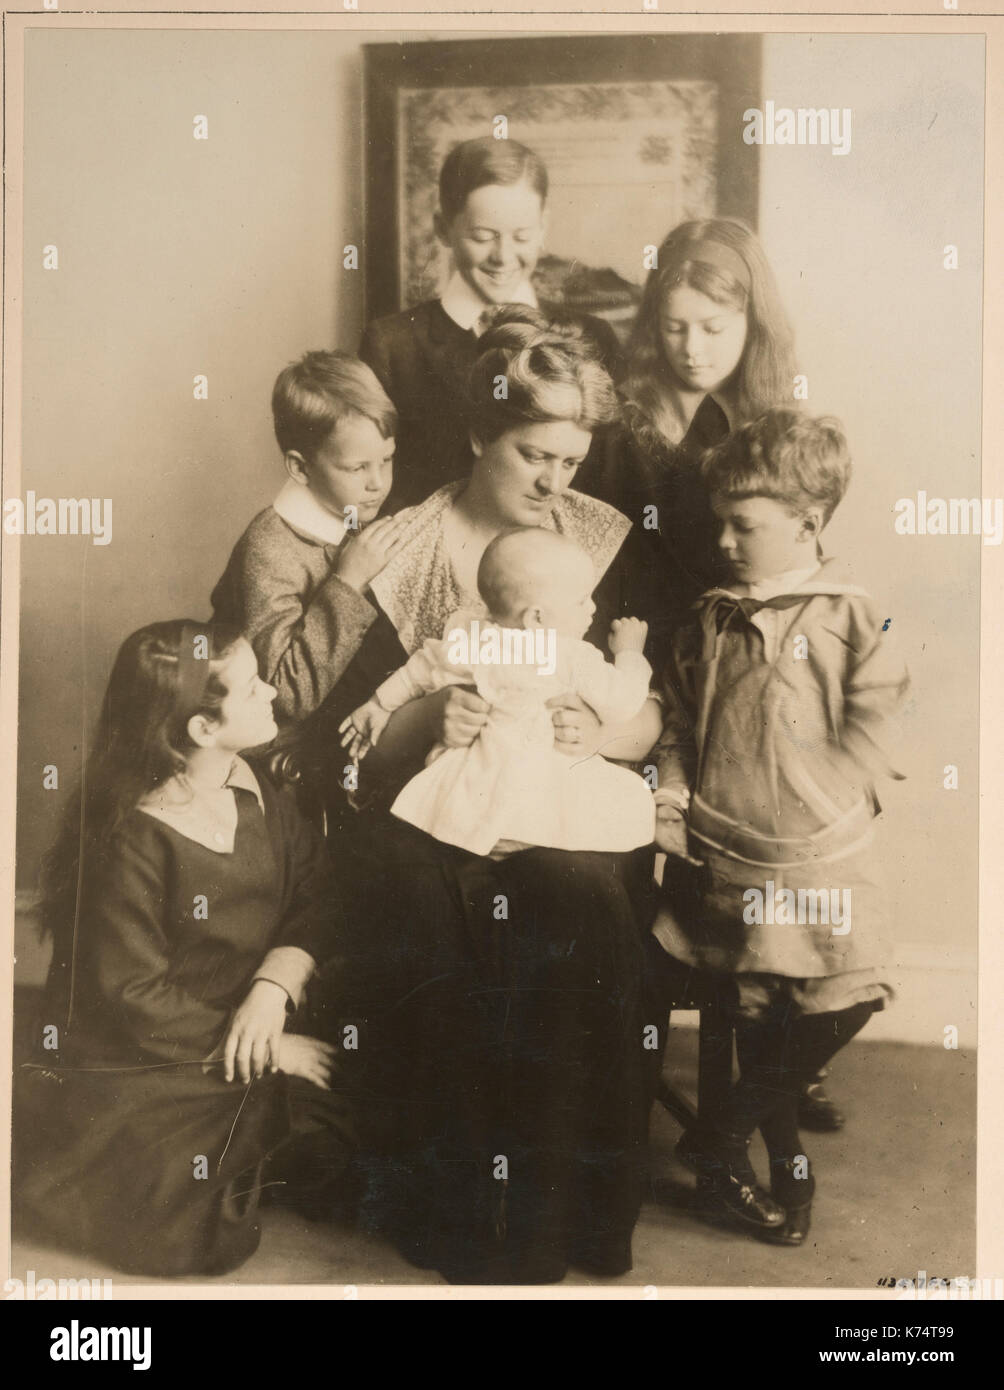 Frau Paul Crompton von Philadelphia dn ihre sechs Kinder, die verloren gehen, wenn die lusitania durch ein deutsches U-Boot torpediert wurde. Philadelphia, 1915 Stockfoto